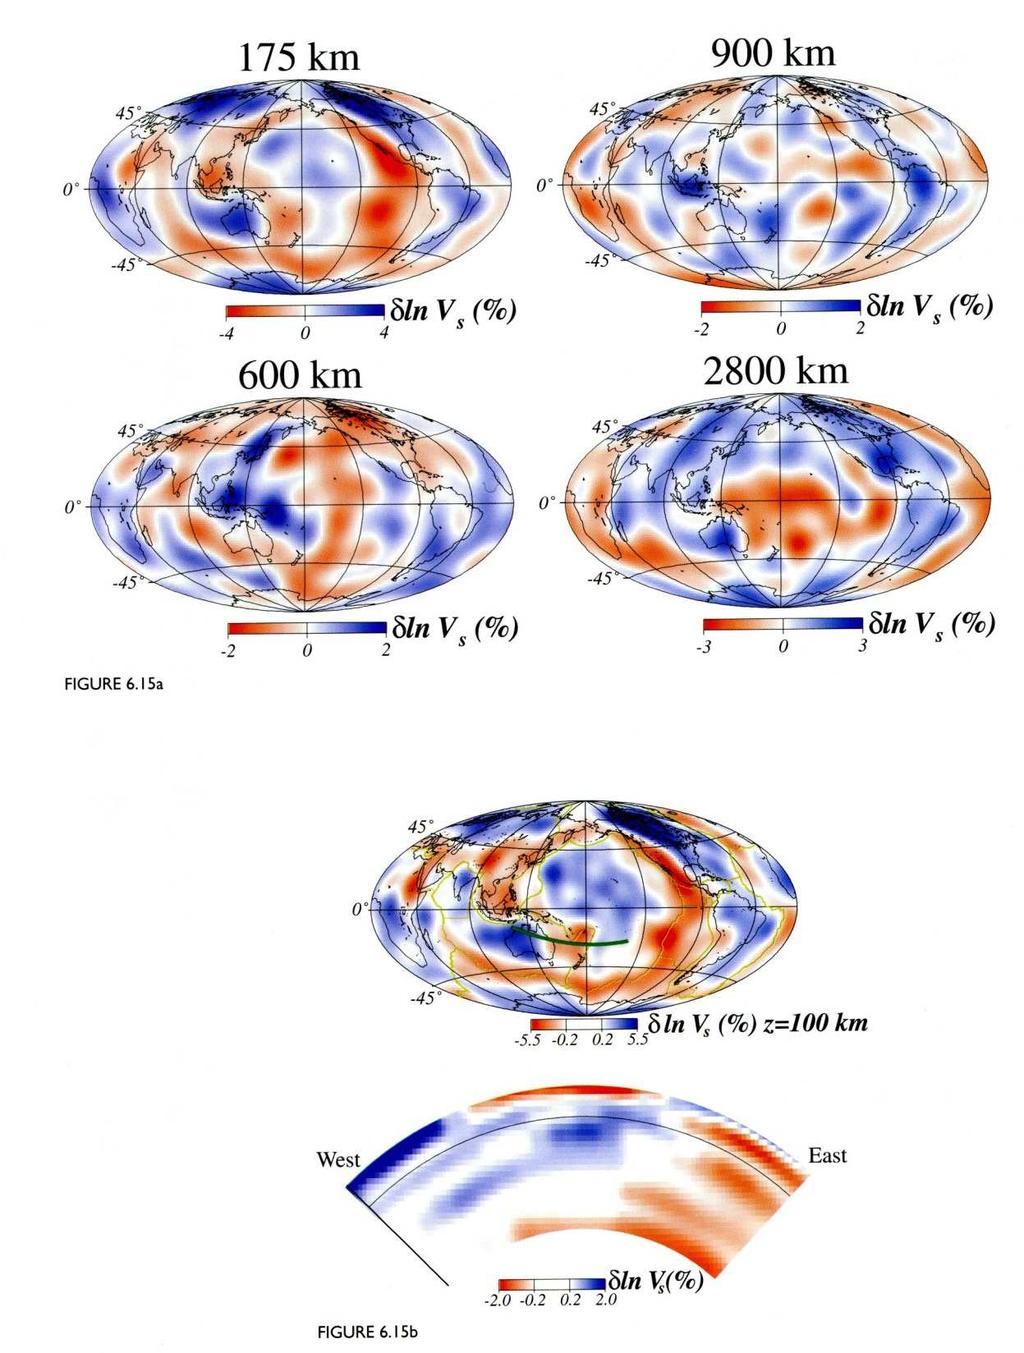 La tomografia sismica rivela bassa velocità in corrispondenza delle zone divergenti (dorsali oceaniche) e alta nelle zone convergenti (fosse) zone + calde e + fredde?